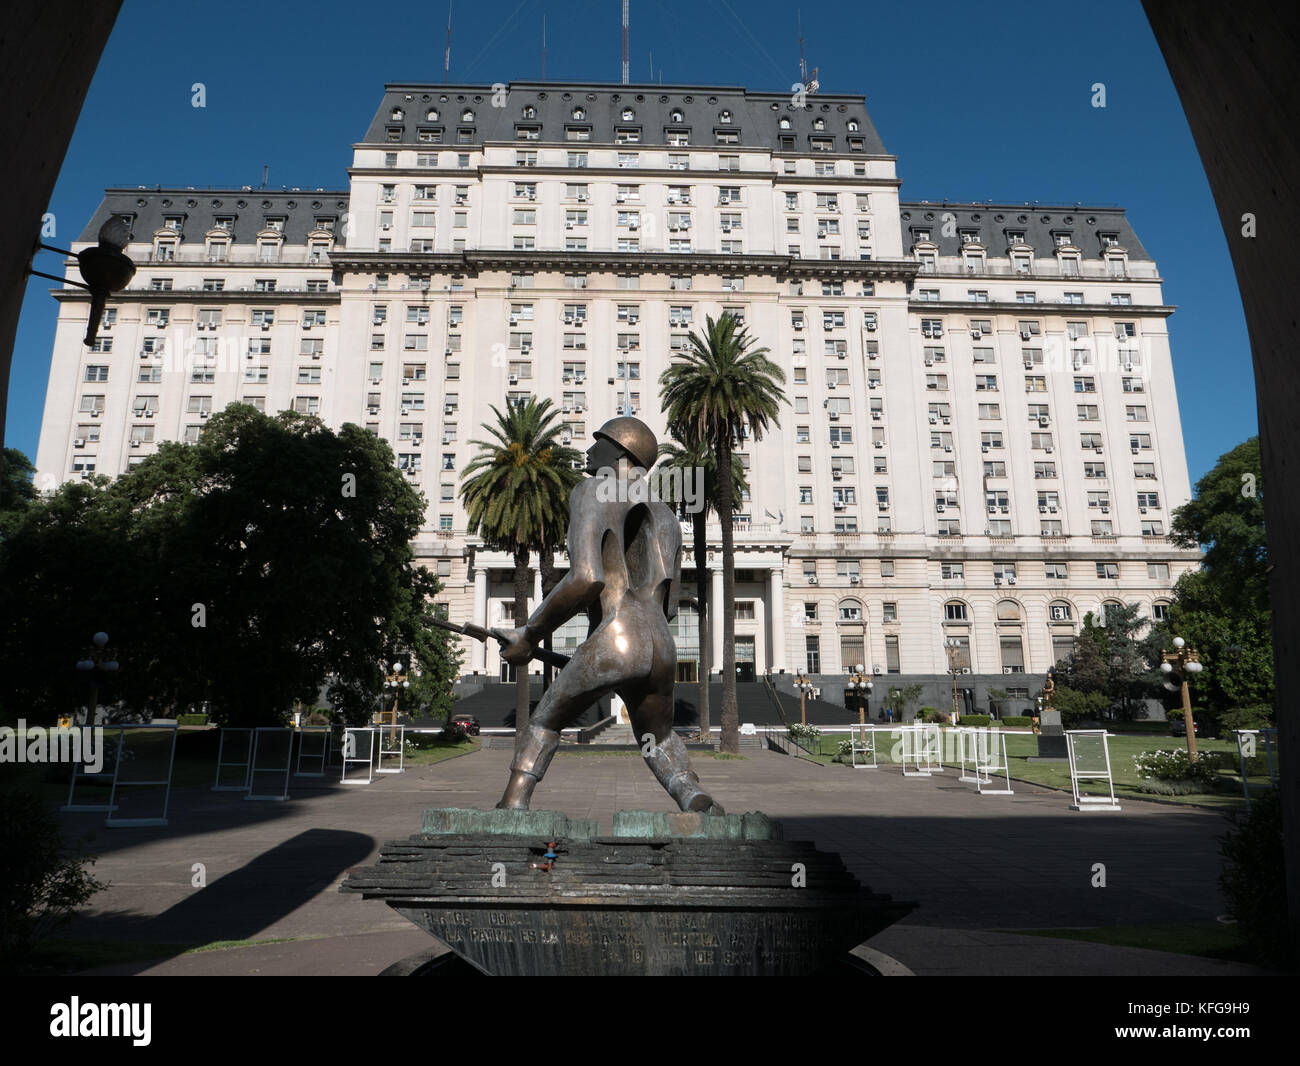 Statue de bronze d'un soldat portant une carabine devant le bâtiment du Ministère de la défense à Bueno Aires, Argentine. Imposant bâtiment en pierre blanche bleu ciel. Banque D'Images